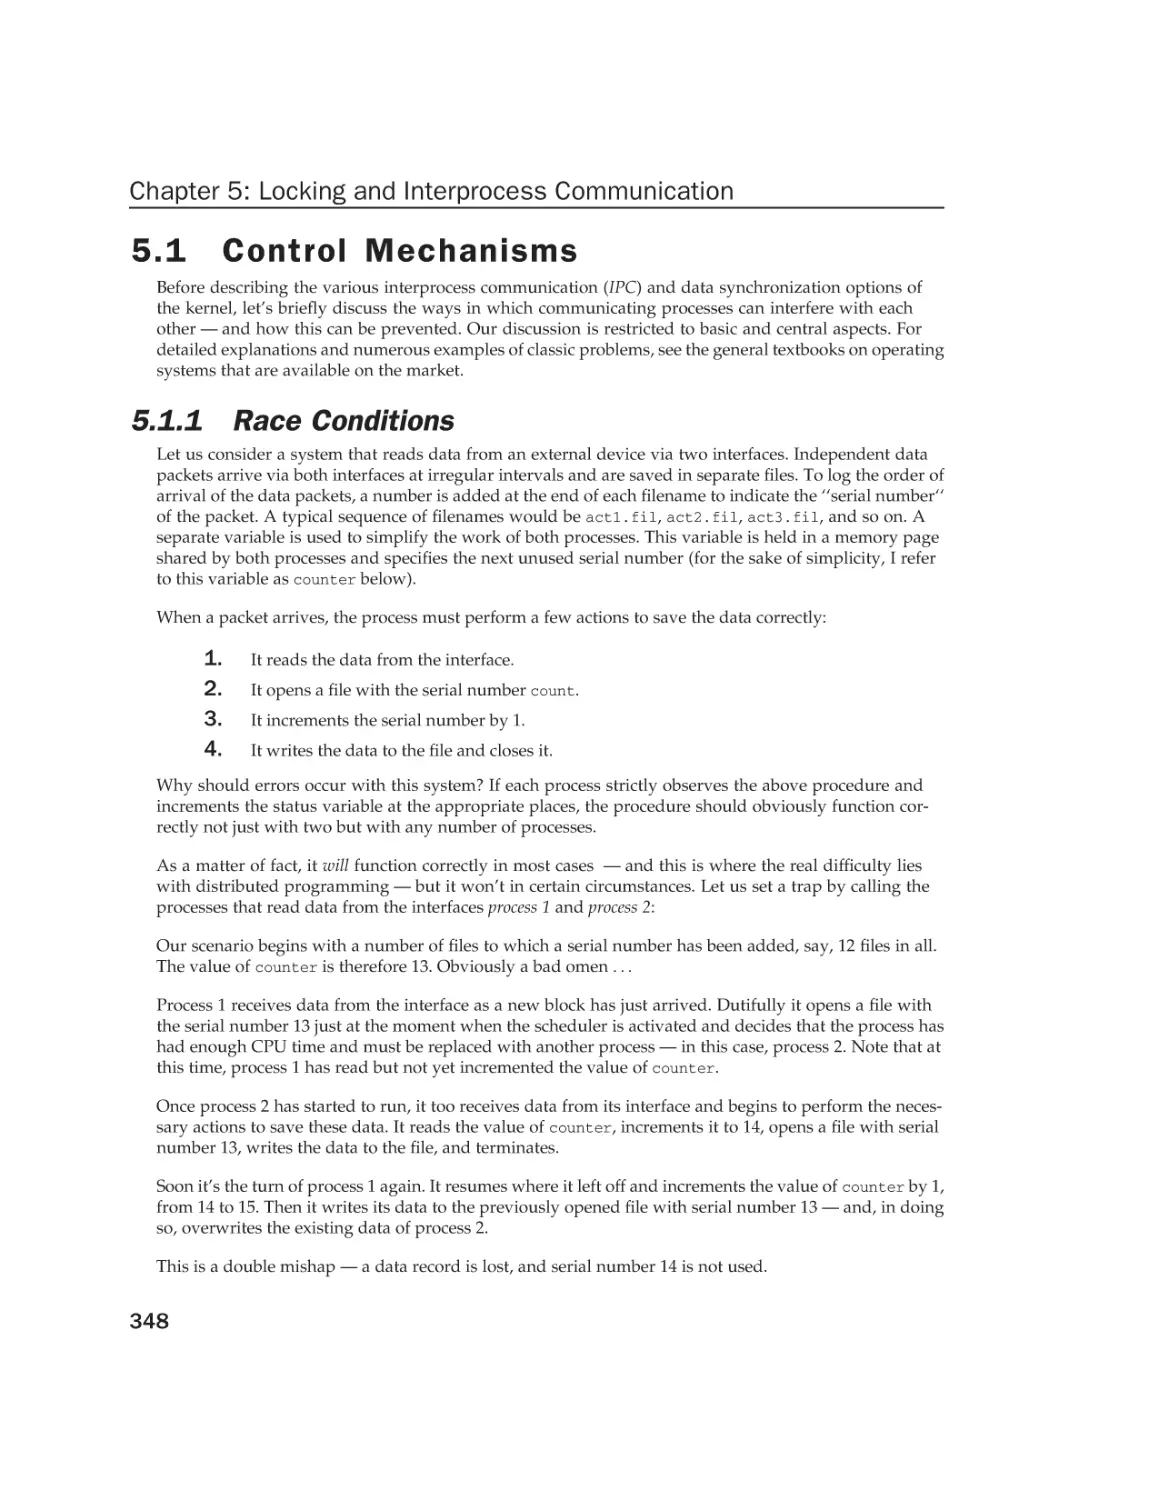 5.1 Control Mechanisms